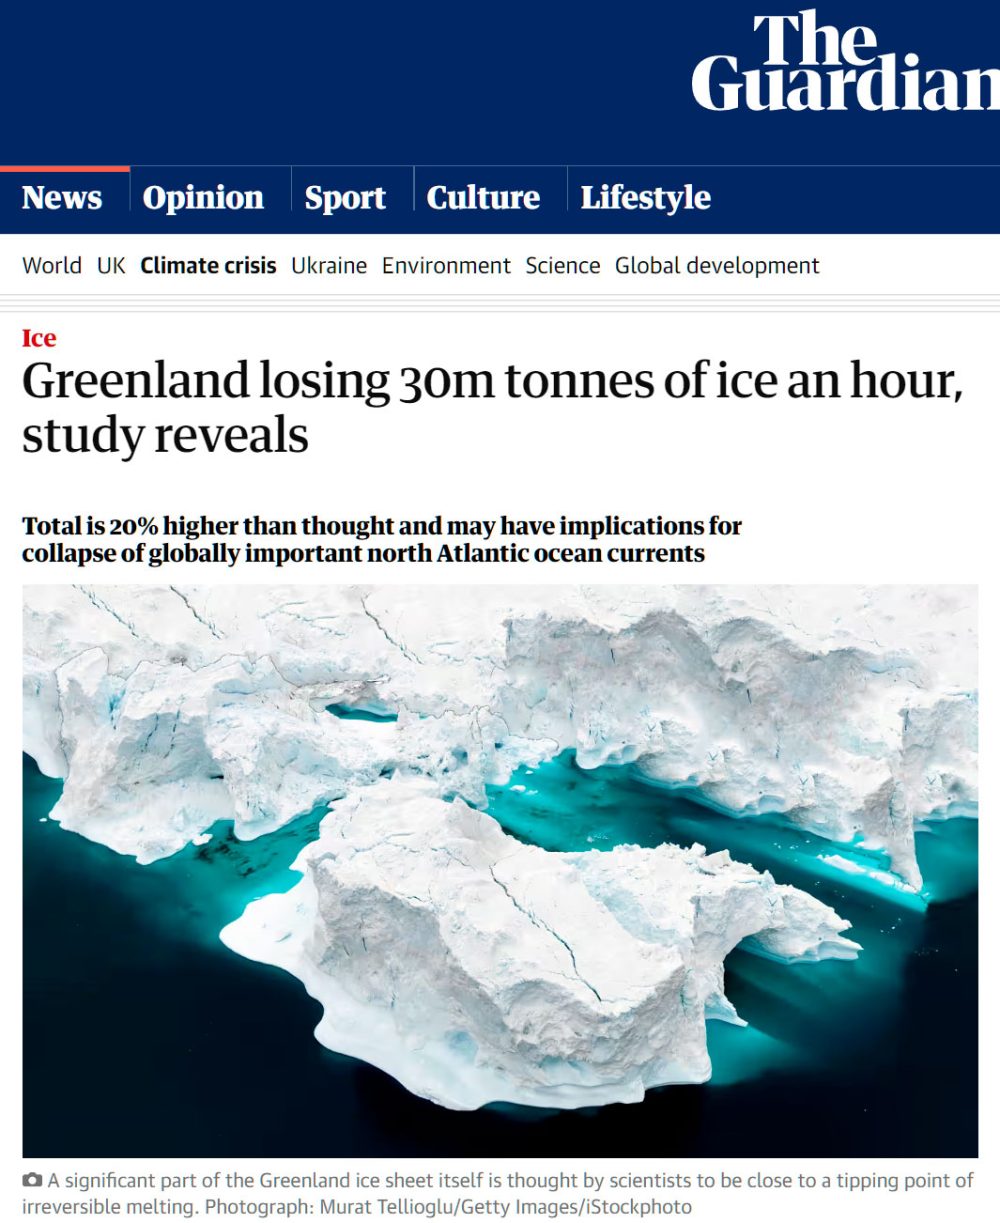 Un estudio revela que Groenlandia pierde 30 millones de toneladas de hielo por hora